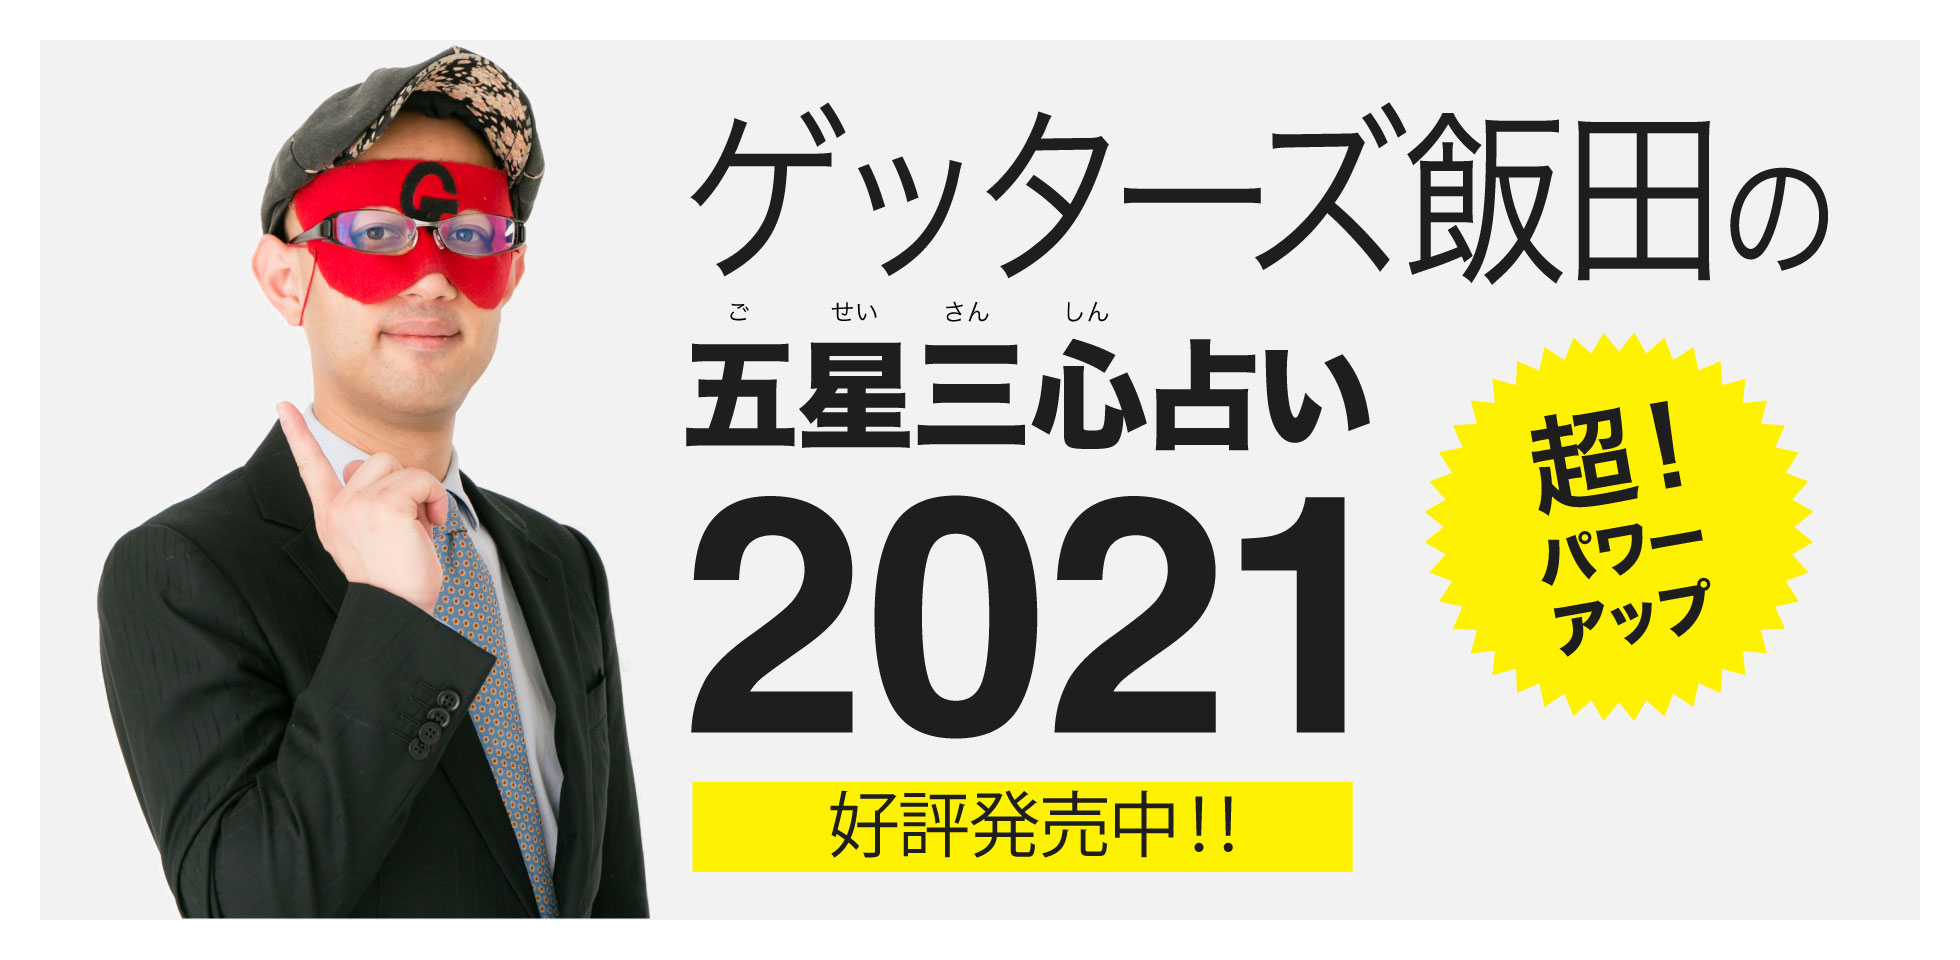 飯田 ゲッターズ 2021 運勢 年